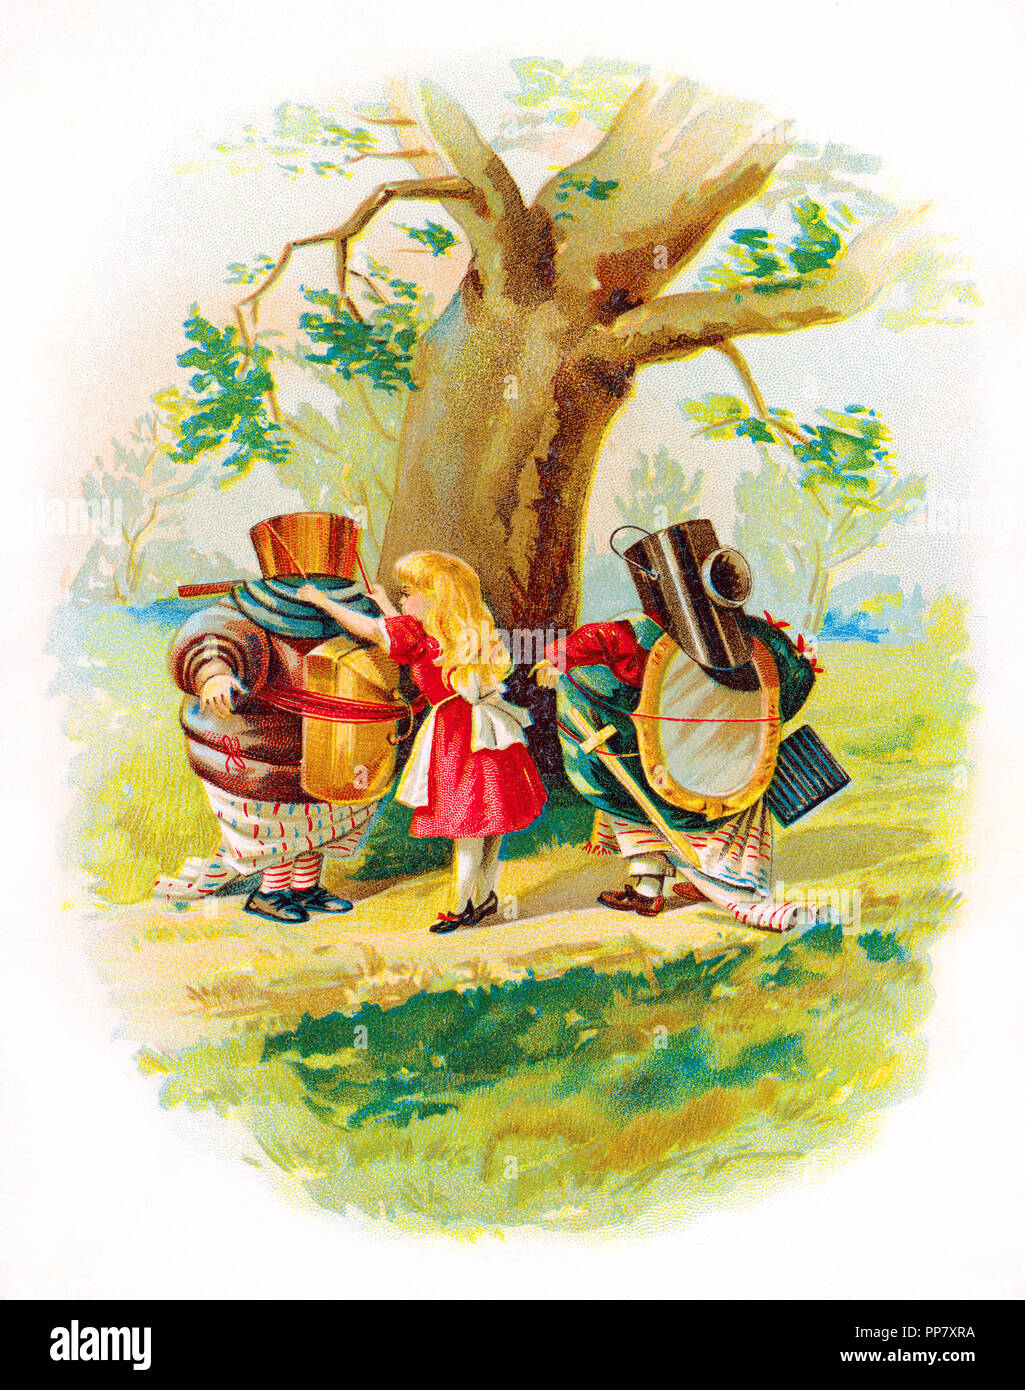 Alice in Wonderland con Tweedle Dee y Tweedle Dum Foto de stock